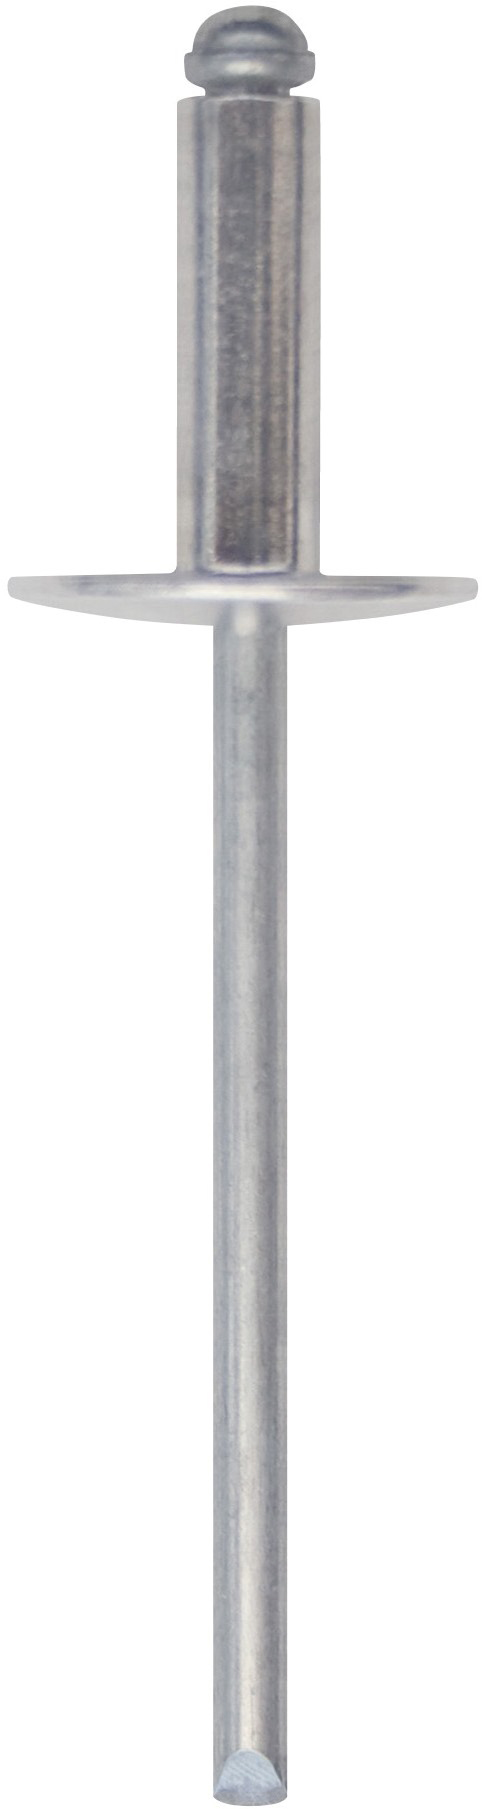 Cod. 0300104803500 - RIVEX Rivetto in alluminio con testa larga